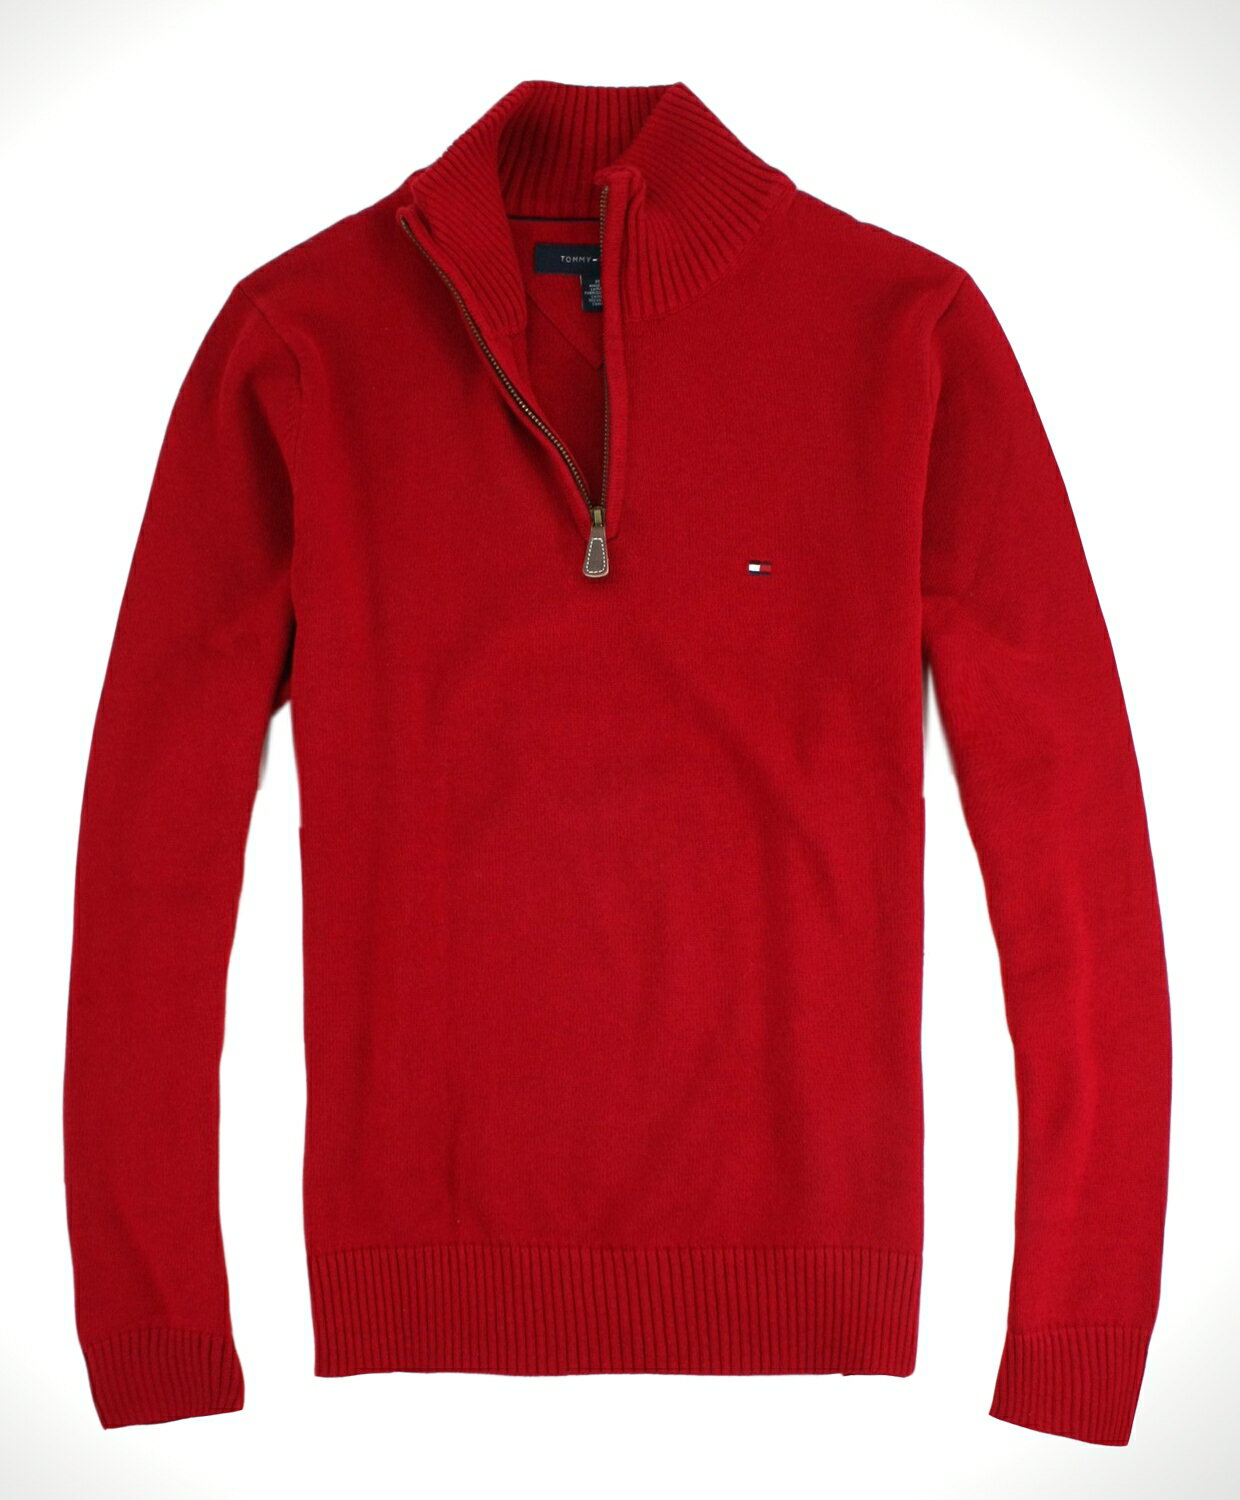 美國百分百【全新真品】Tommy Hilfiger TH 男款 針織衫 立領毛衣 半拉夾克 上衣 紅 免運 M號